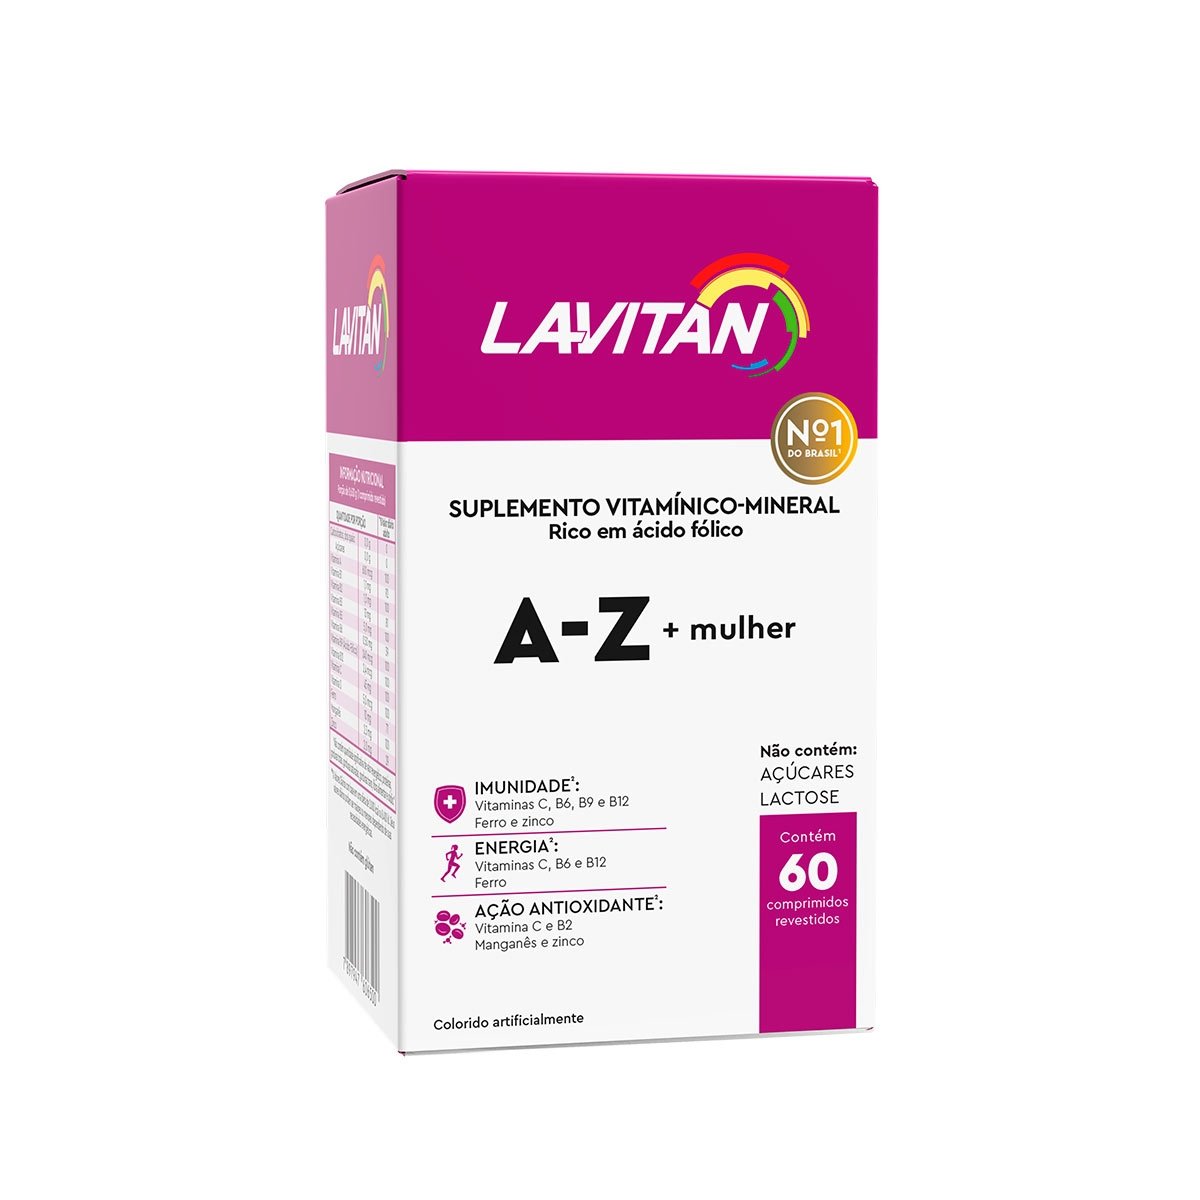 Suplemento Lavitan A-Z + Mulher 60 Comprimidos Revestidos